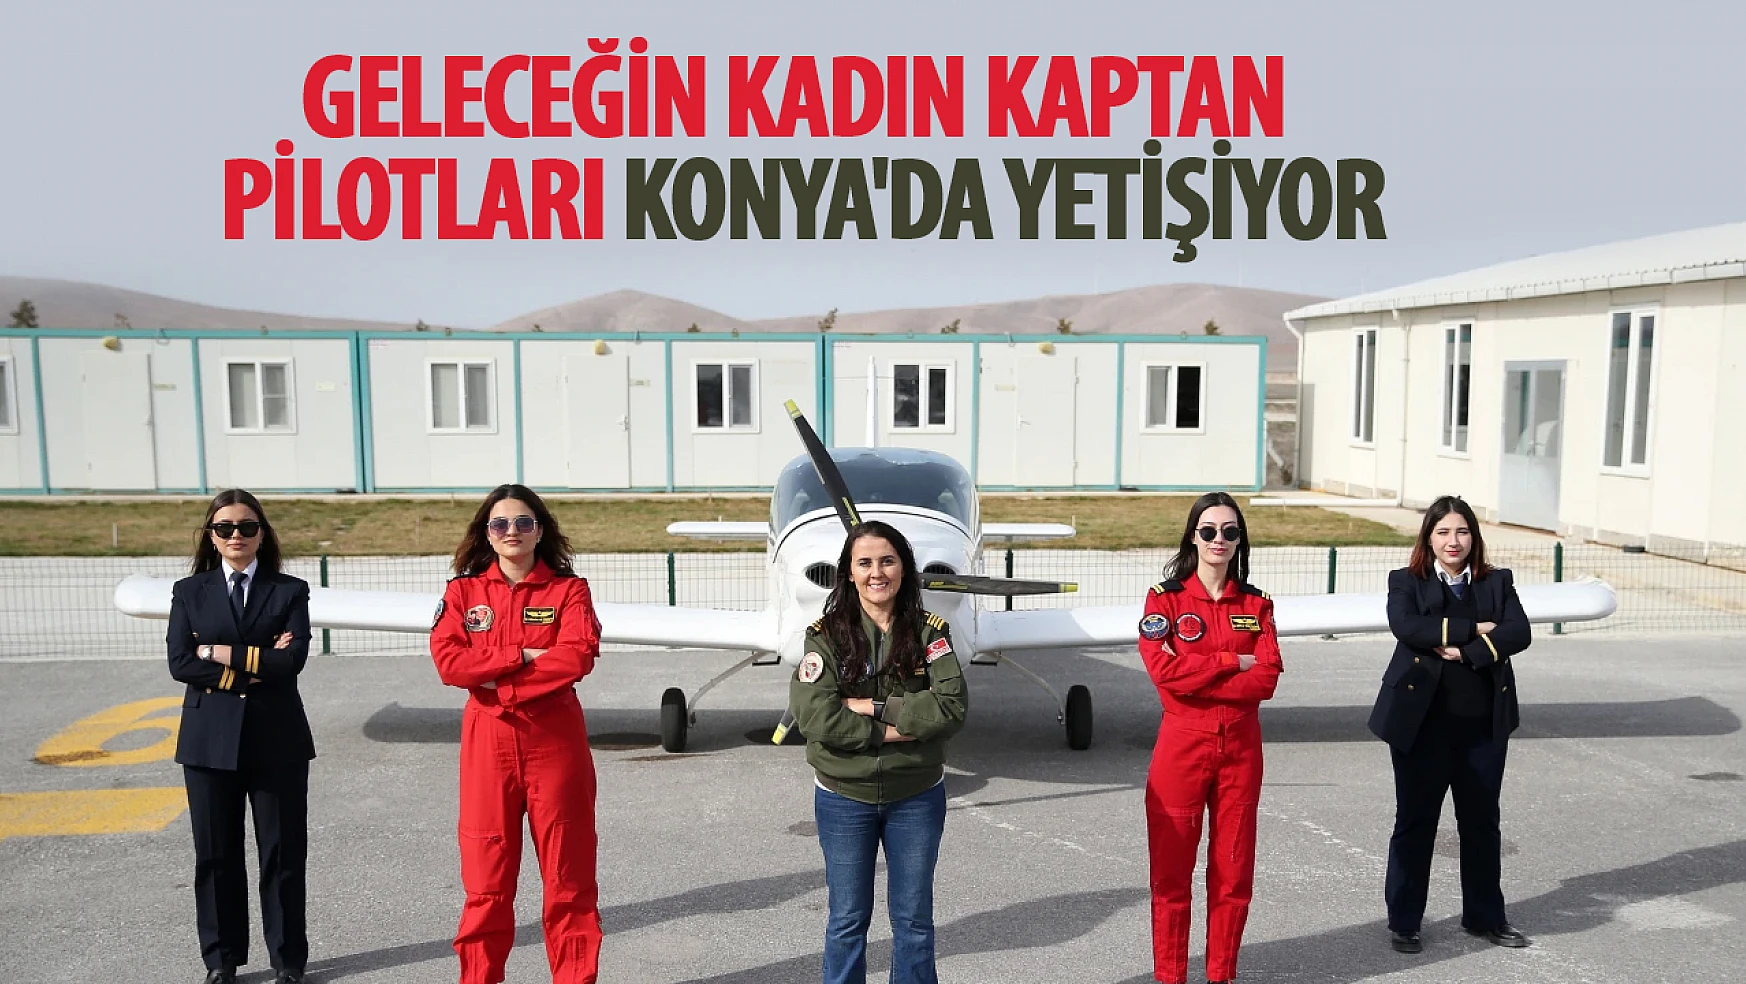 Geleceğin kadın kaptan pilotları Konya'da yetişiyor!